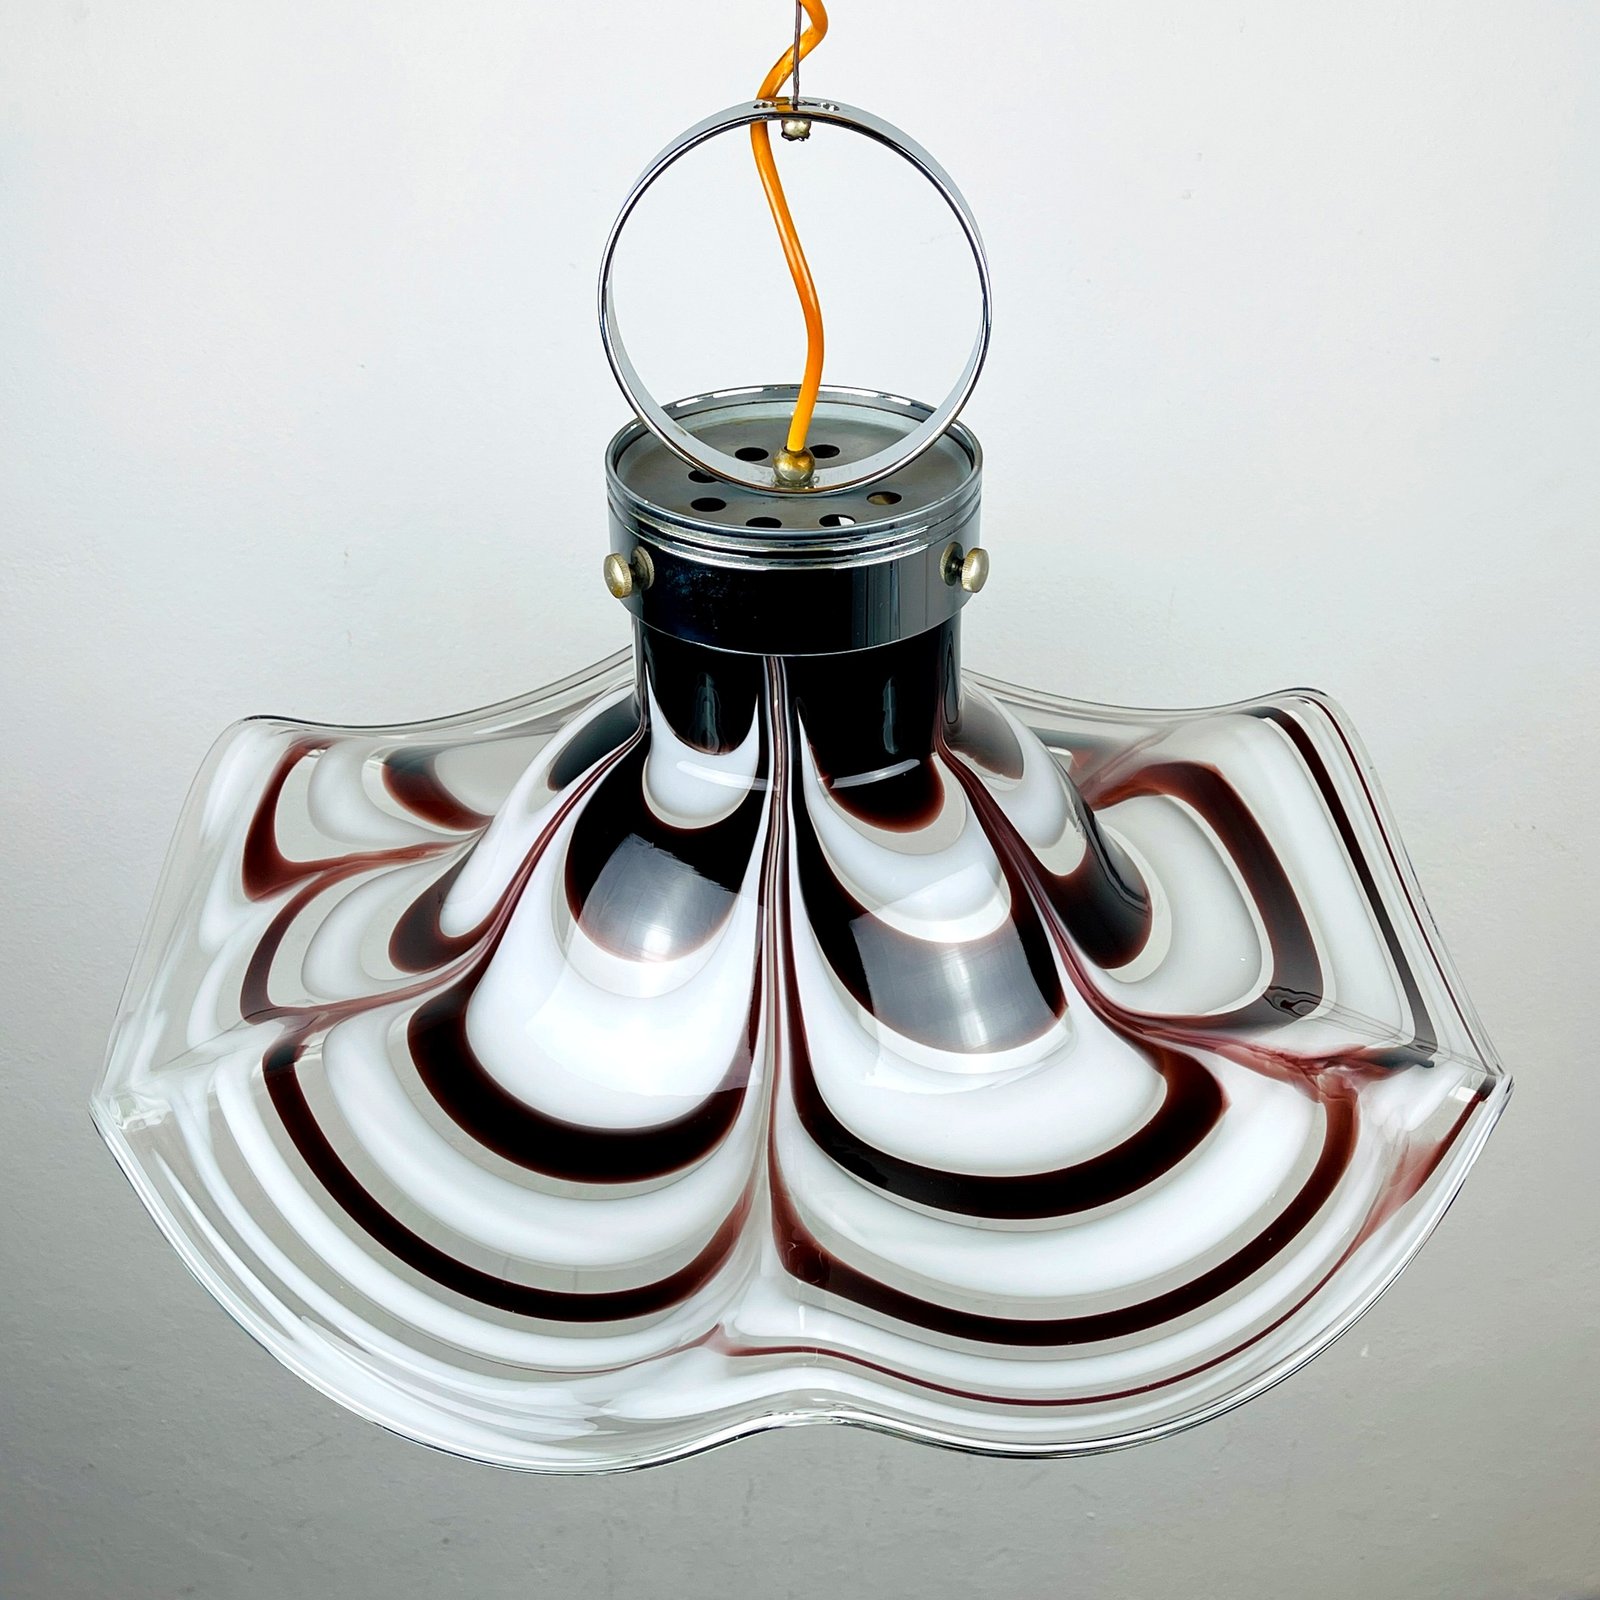 Original murano glass brown pendant lamp Flower by AV Mazzega Italy 1970s Vintage italian lighting